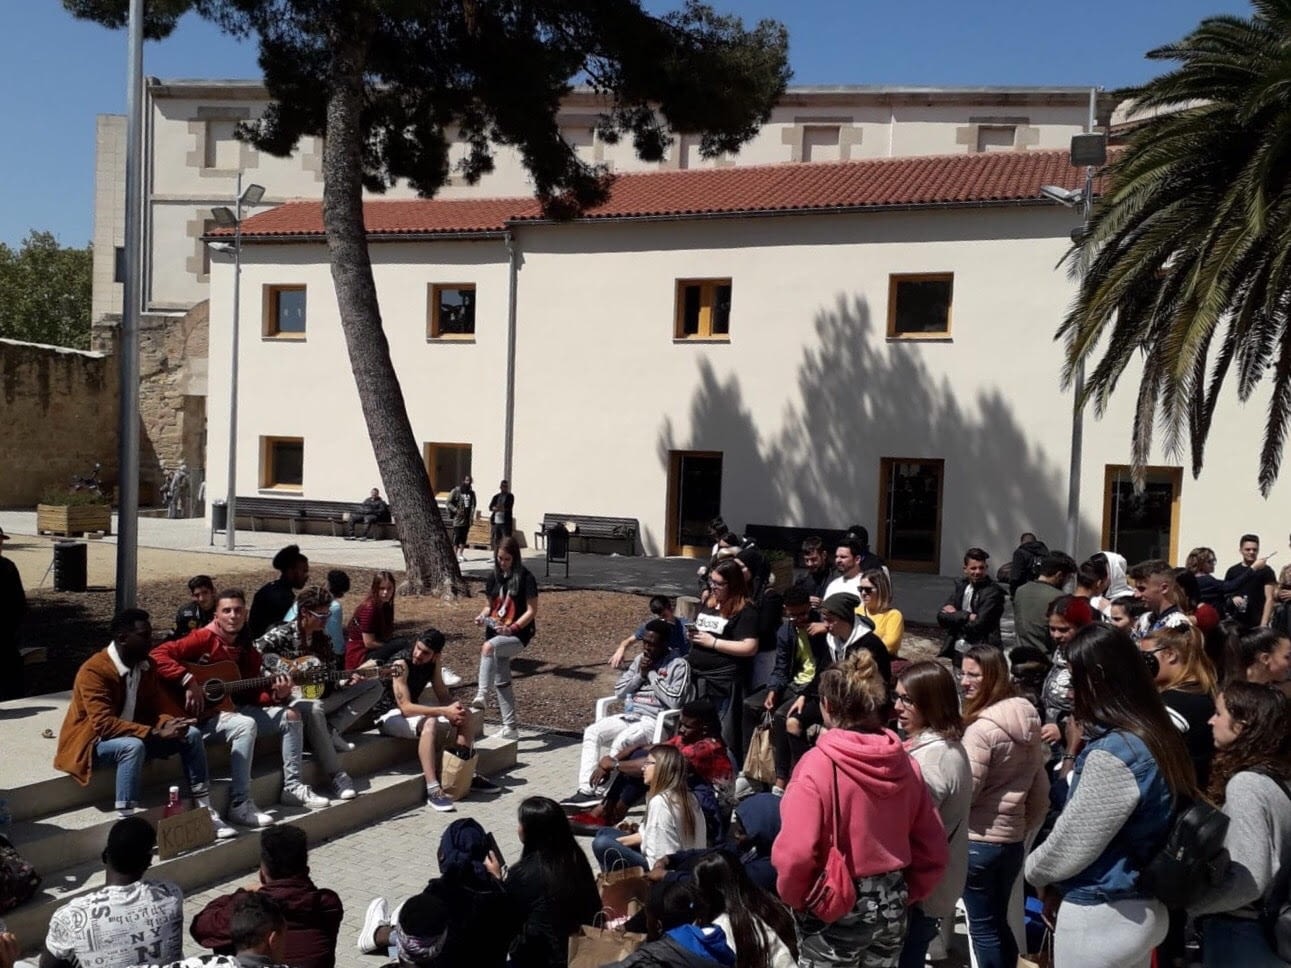 Uns 215 joves participants al programa es troben a Lleida per celebrar una jornada cultural